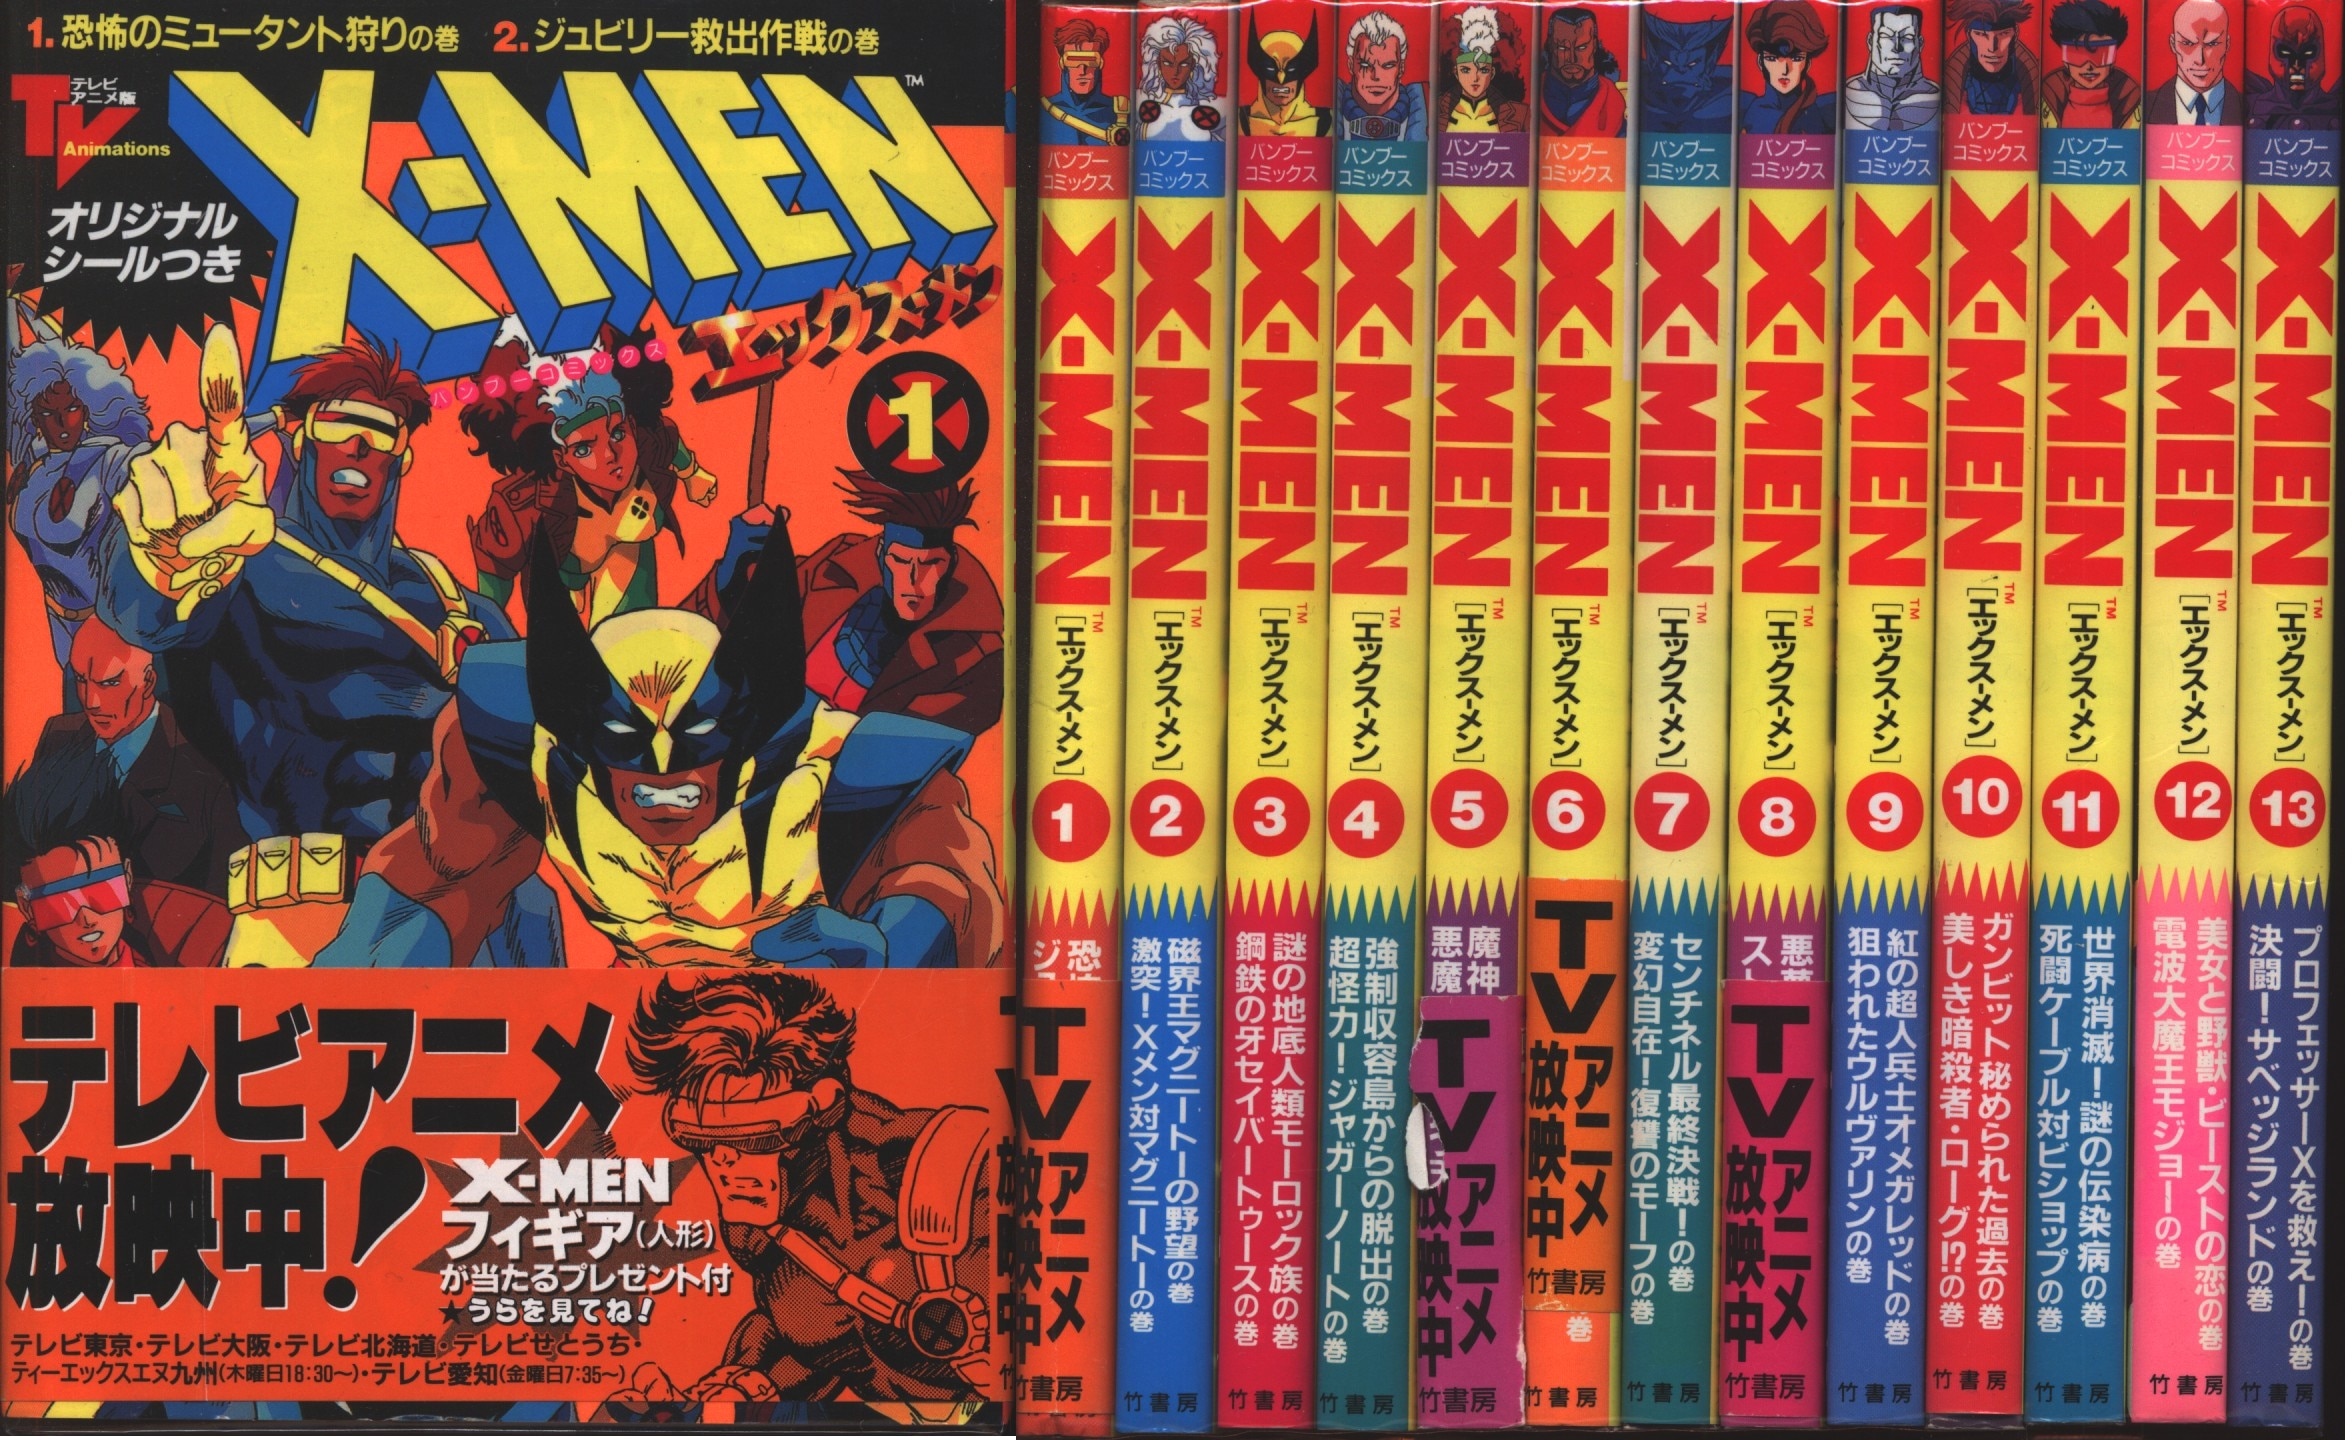 渡辺健一 山本貴嗣 X Men エックスメン テレビアニメ版 全13巻セット まんだらけ Mandarake